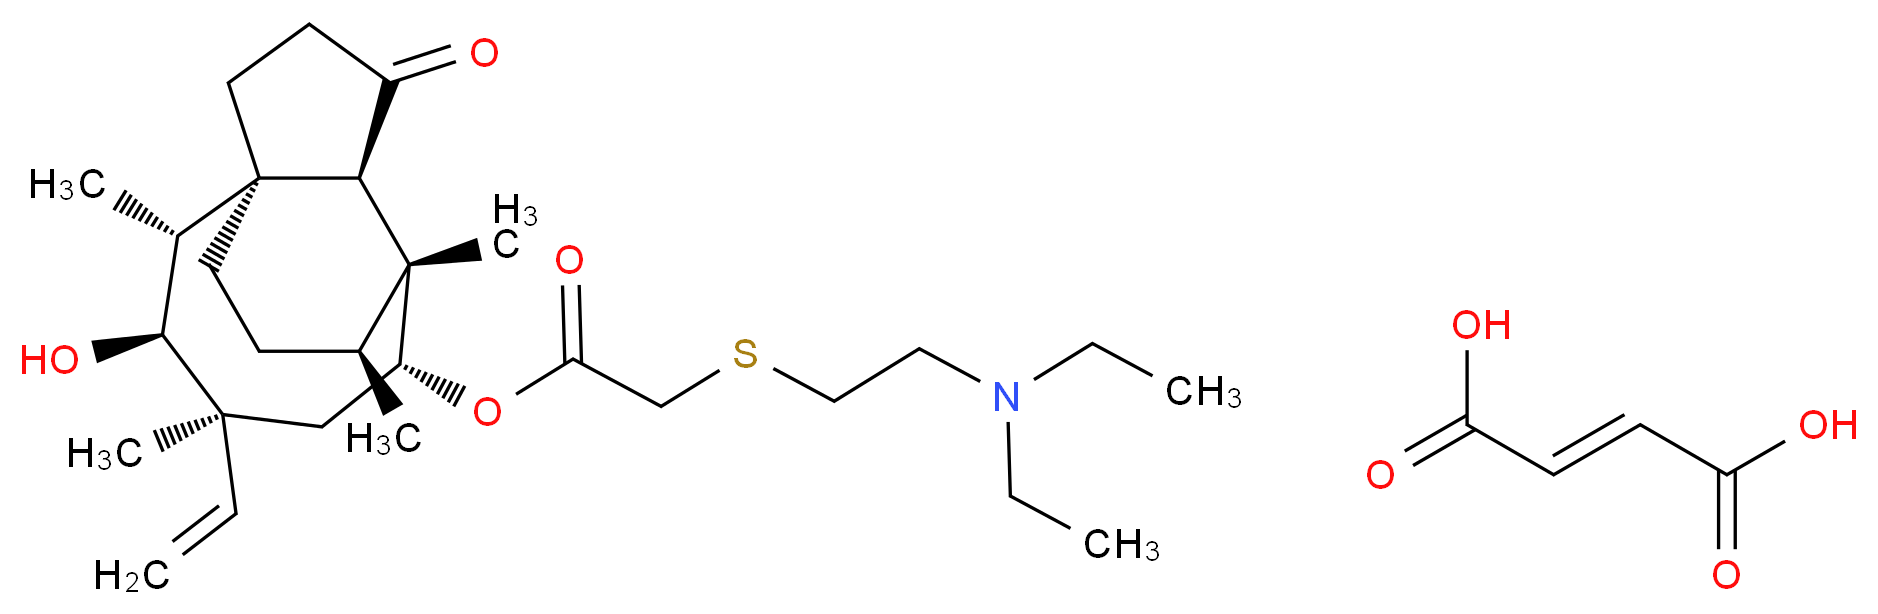 55297-96-6 molecular structure